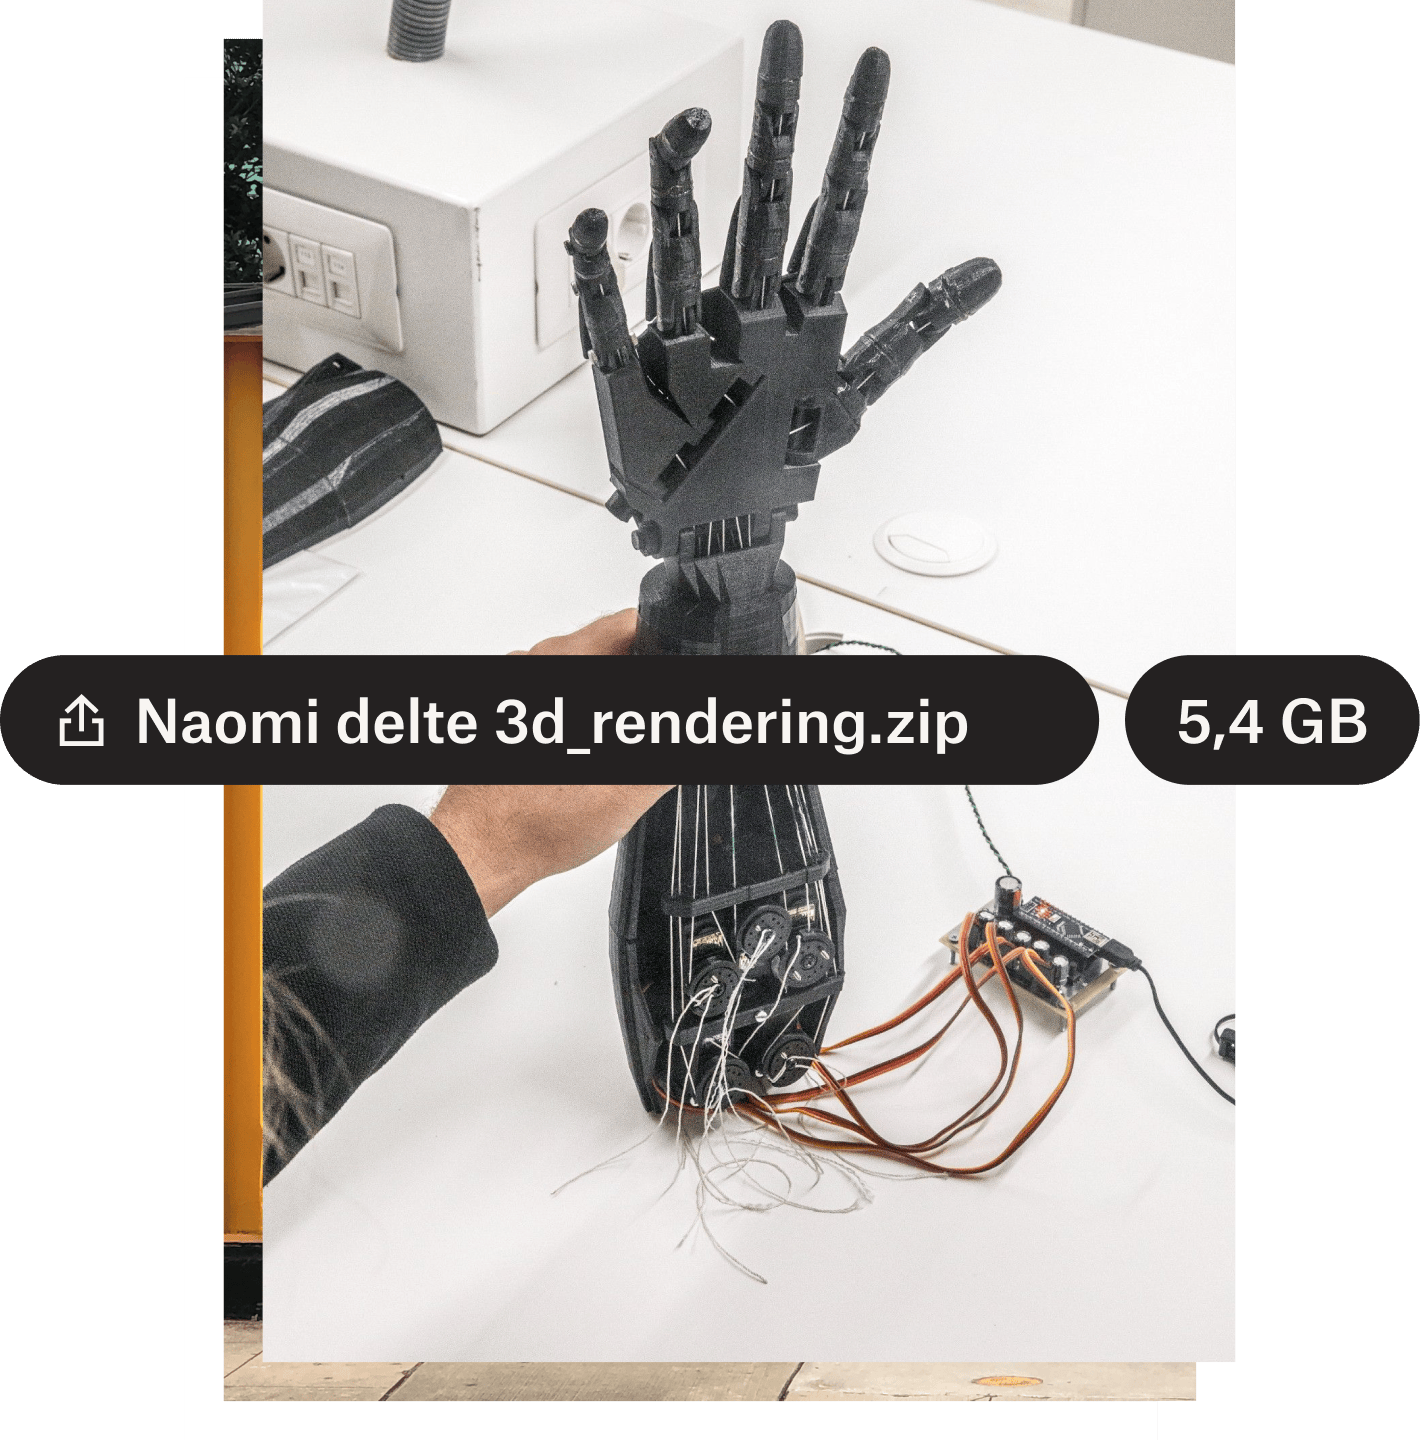 Bilde av en robothånd med filnavn og filstørrelse over i svarte tekstbobler